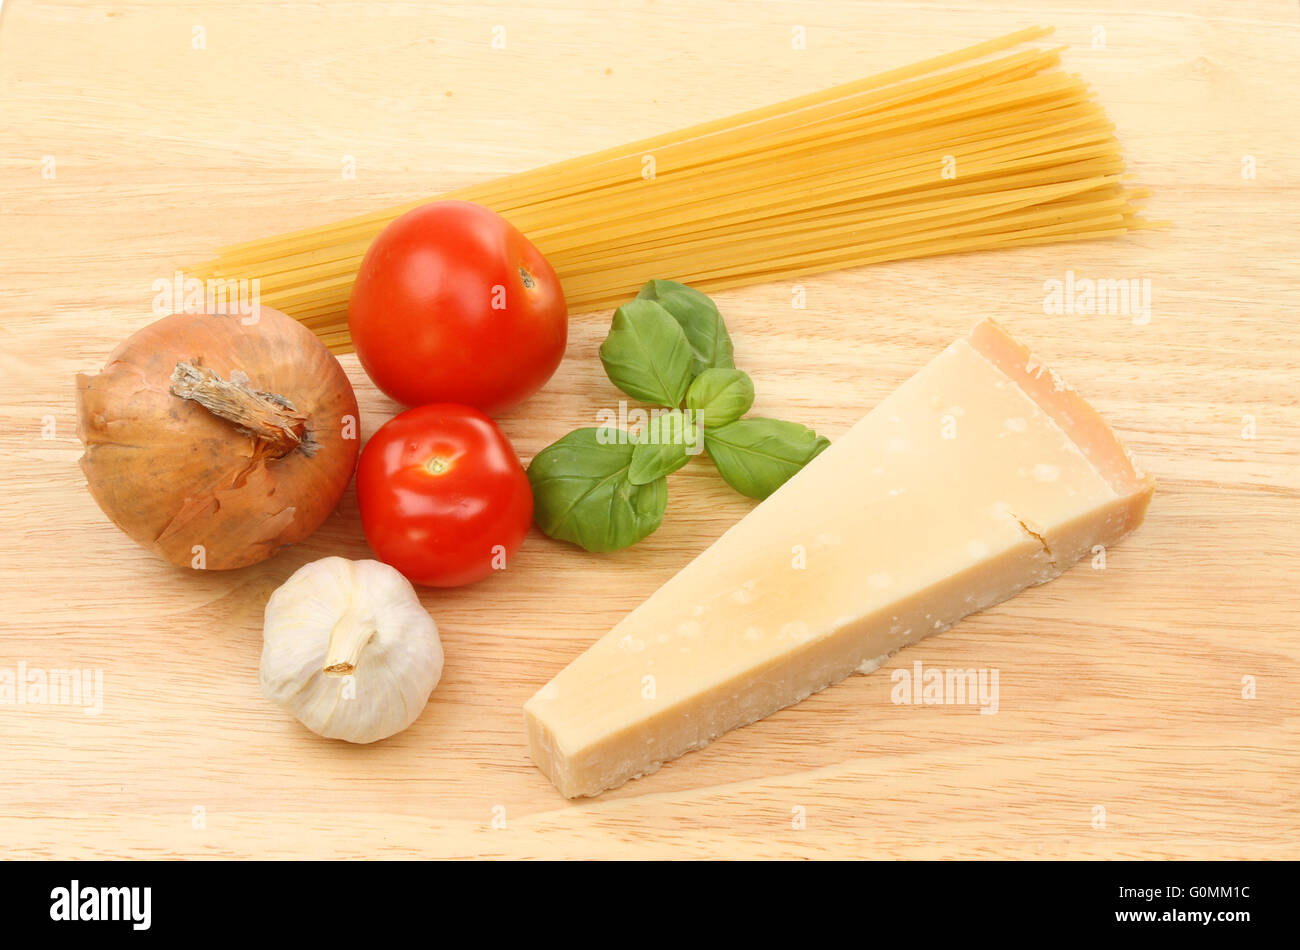 Ingrédients pour une recette de spaghetti sur une planche à découper en bois Banque D'Images